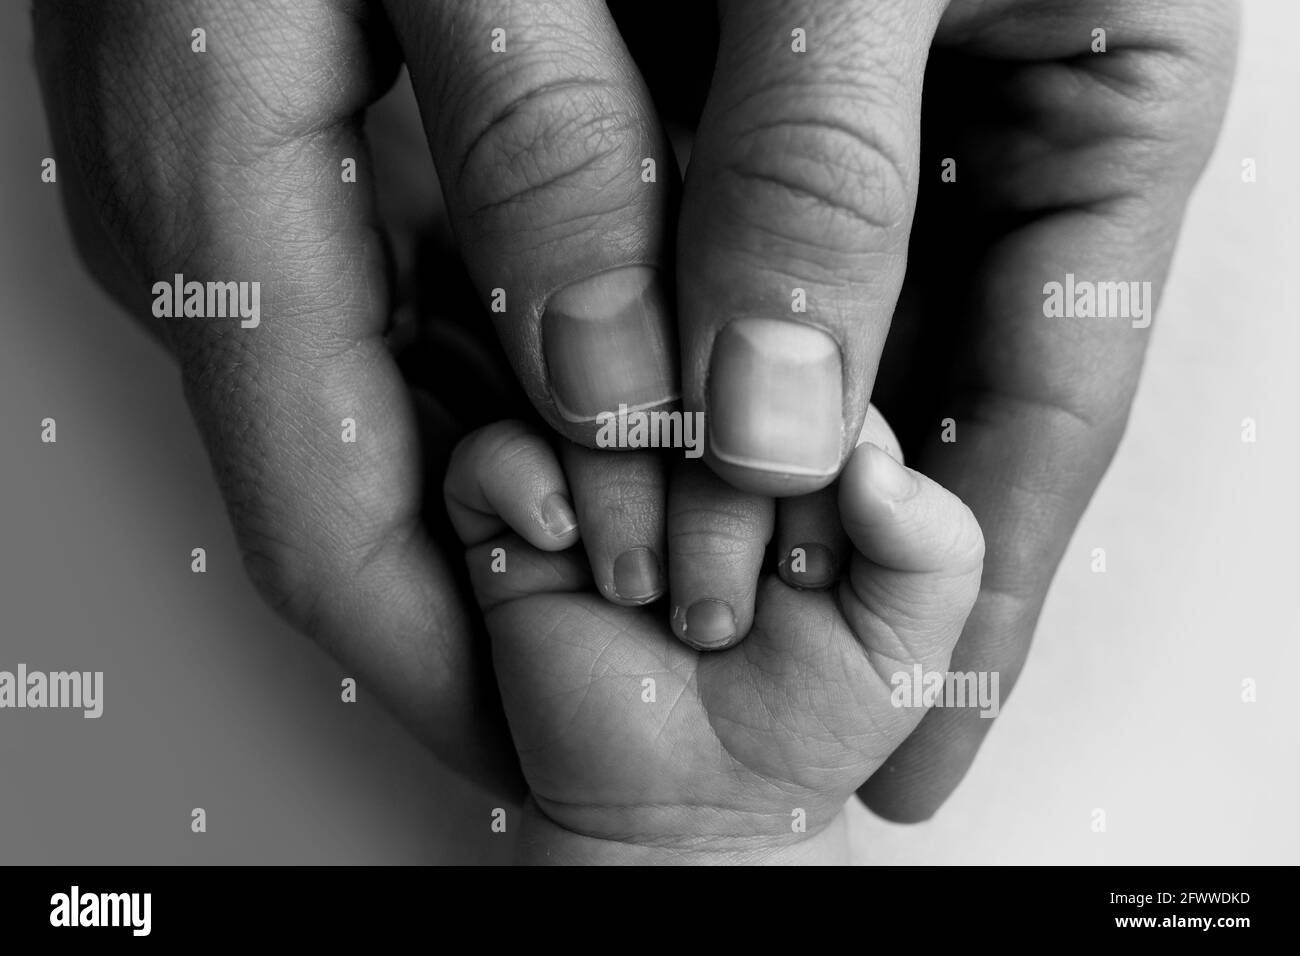 Ein Neugeborenes hält sich an den Finger der Mutter, des Vaters. Hände von Eltern und Baby aus nächster Nähe. Ein Kind vertraut und hält sie fest. Schwarzweiß-Foto. Stockfoto